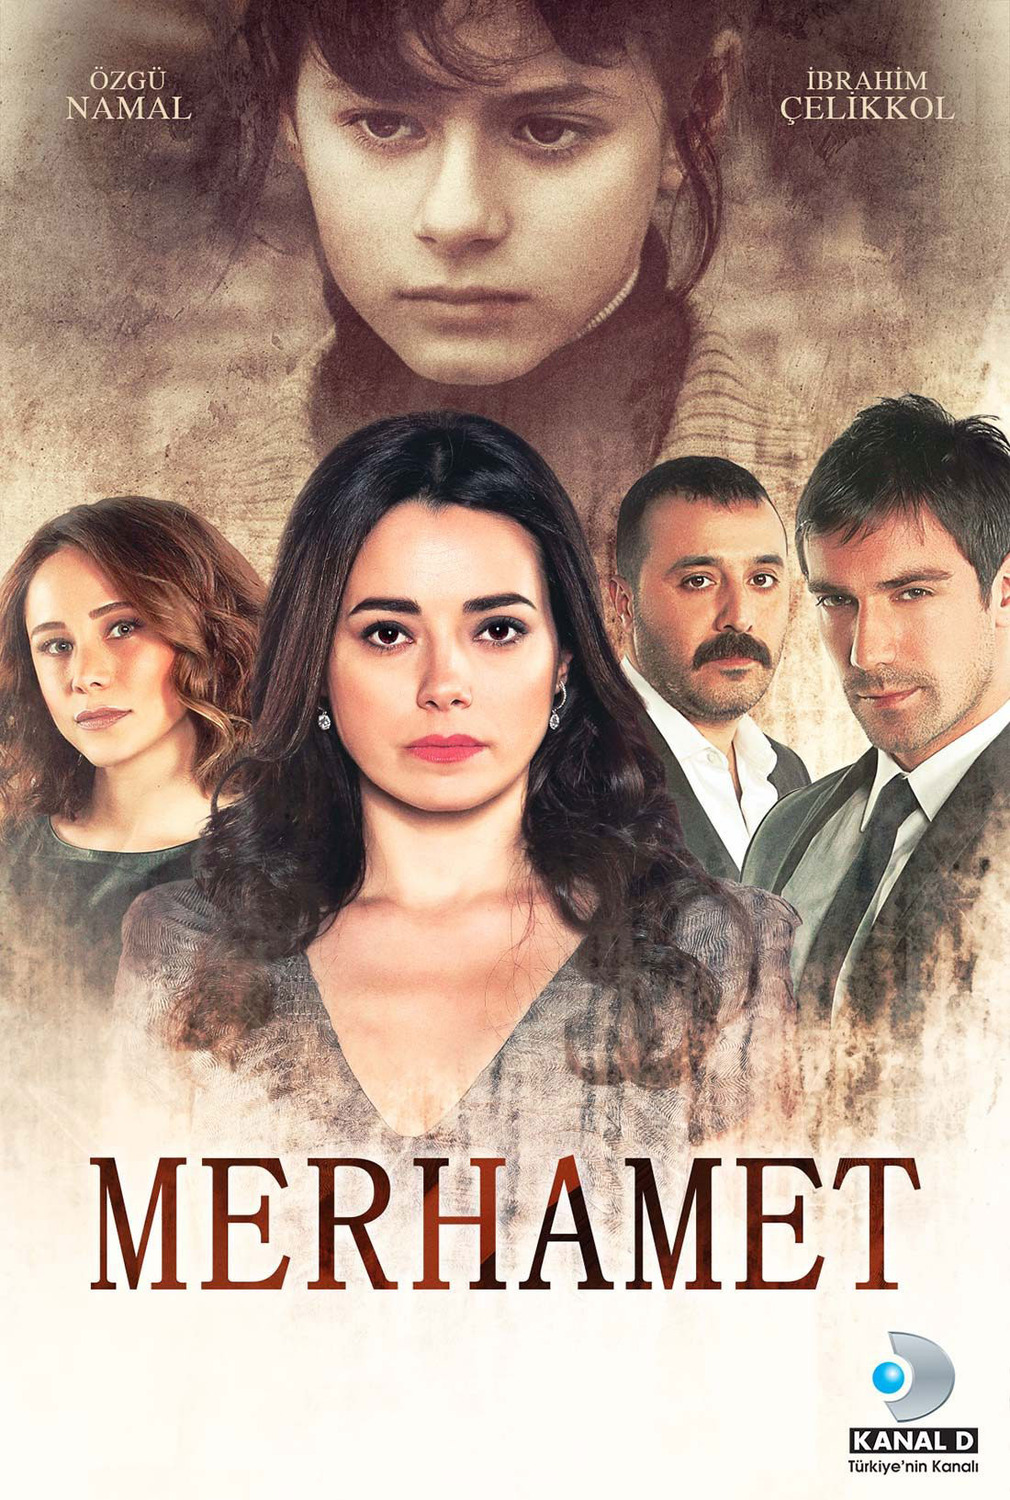 Extra Large TV Poster Image for Merhamet 